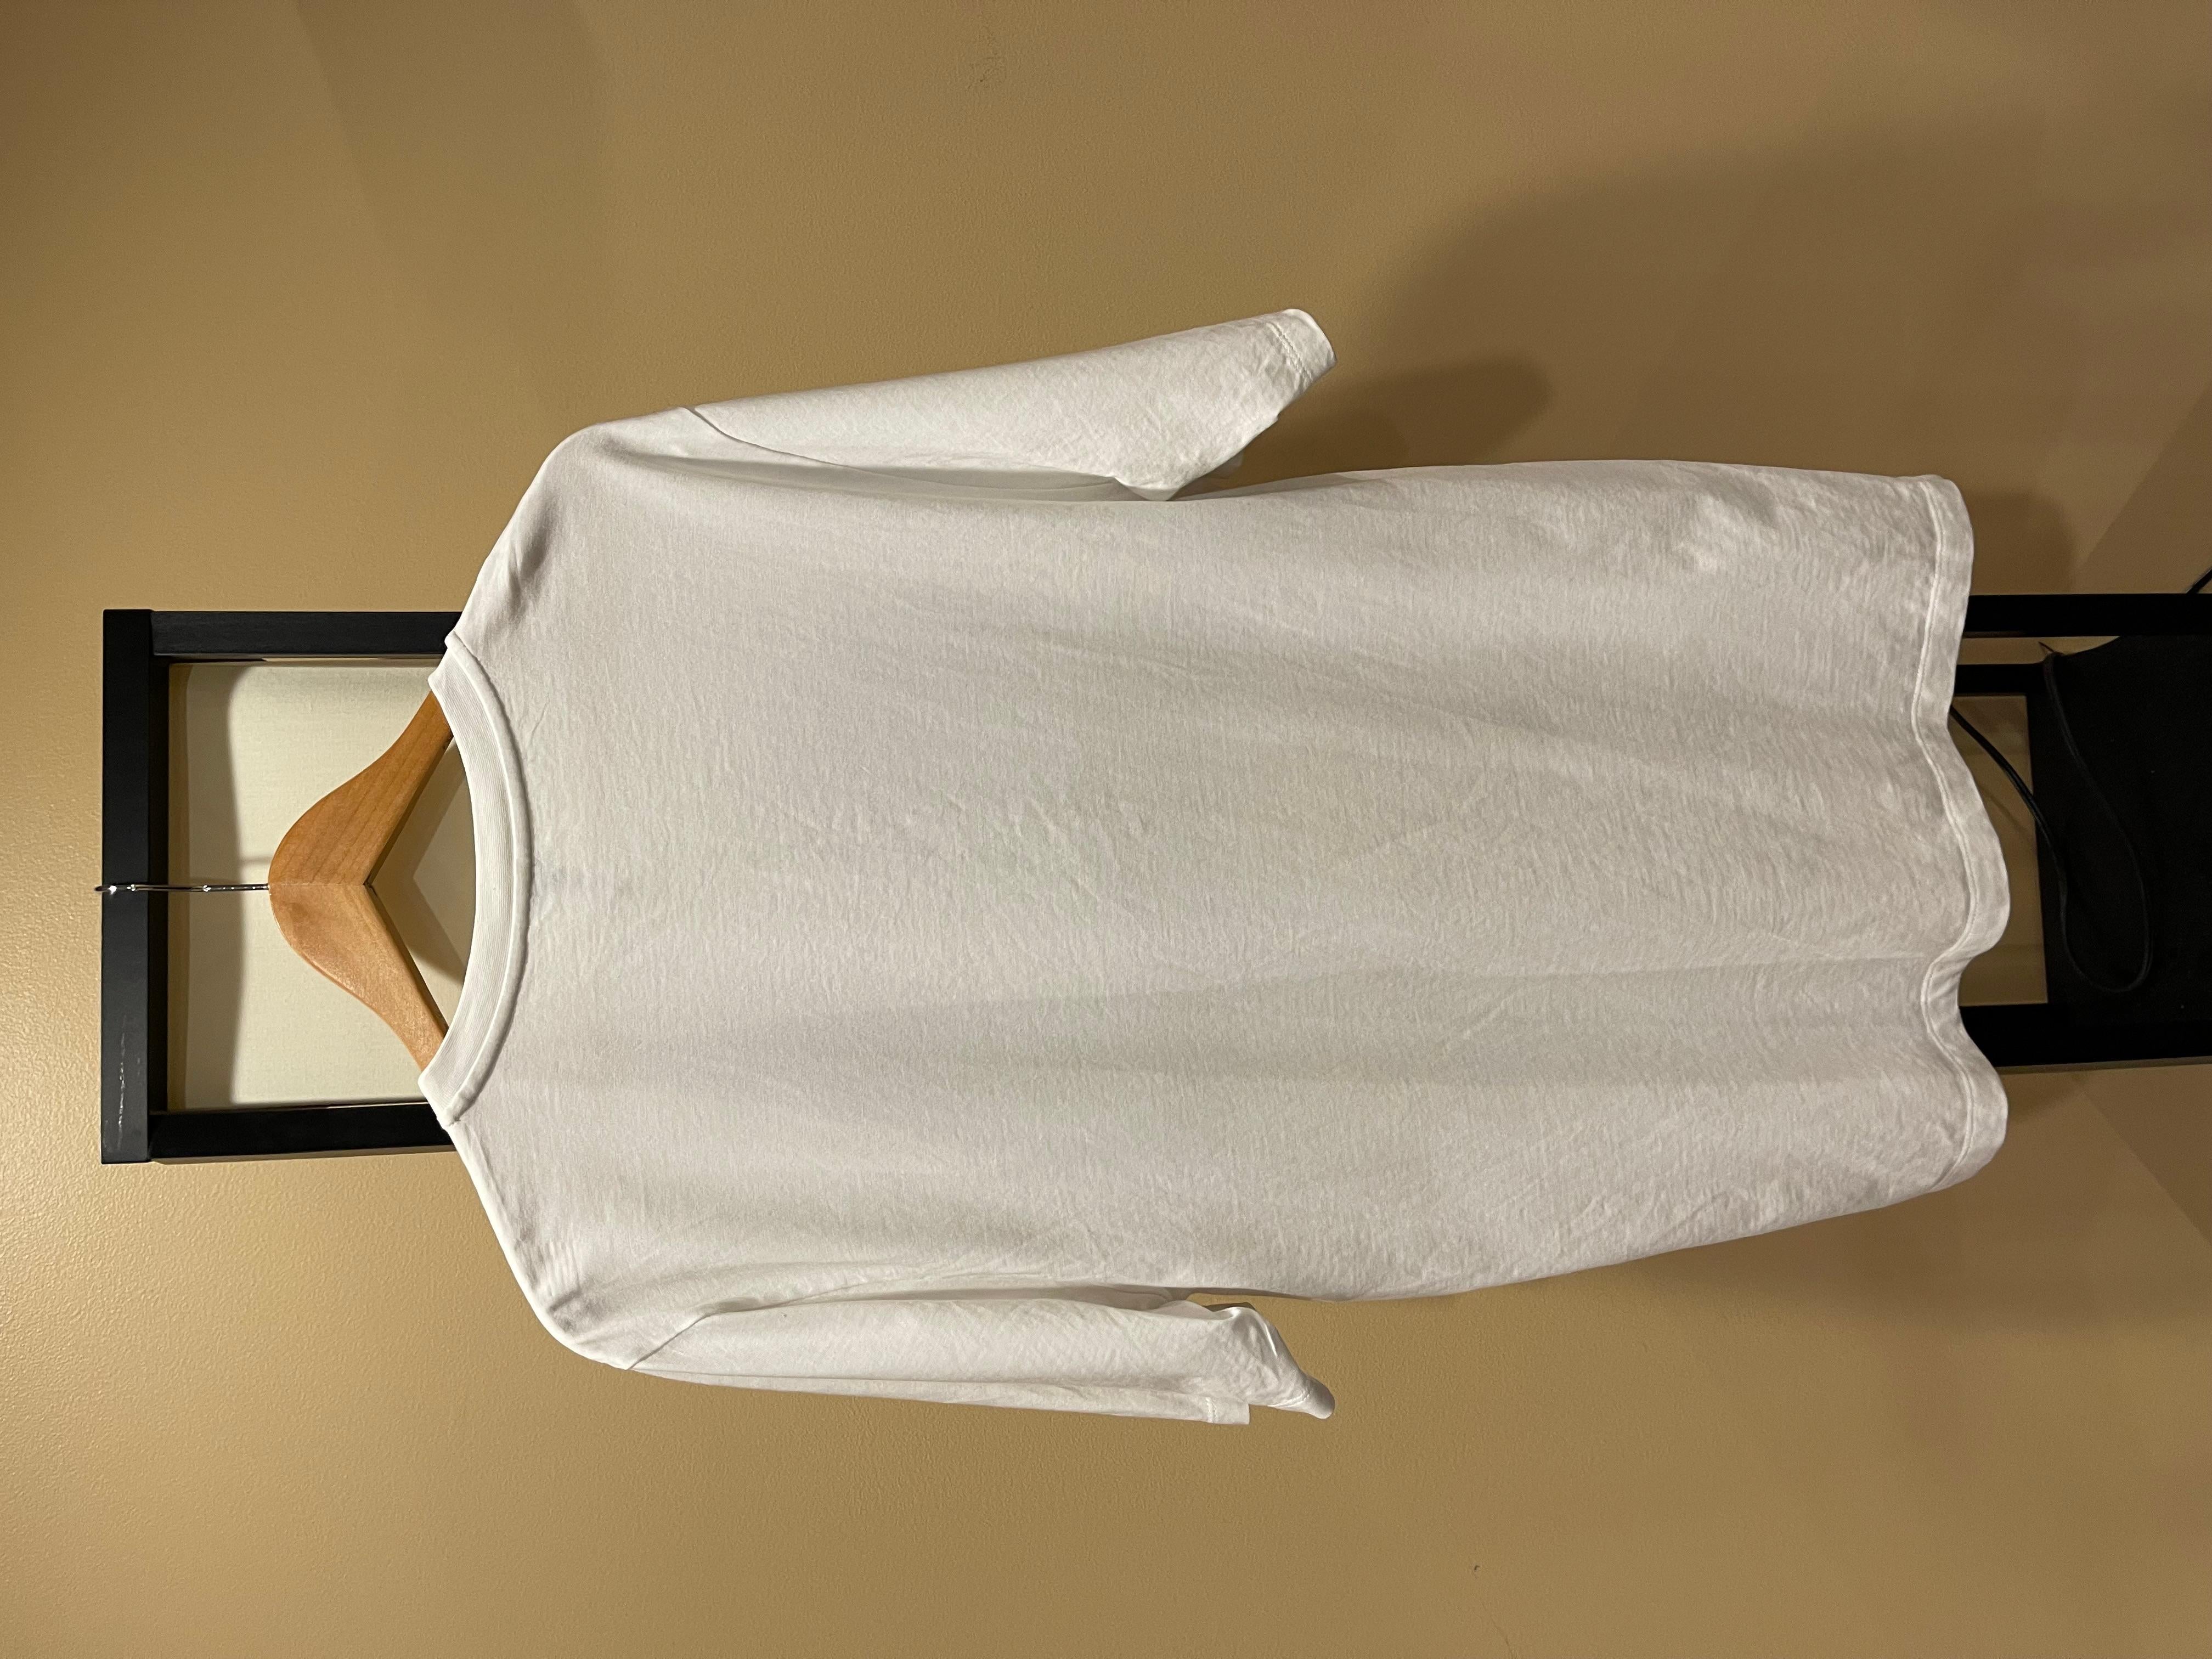 Loewe Mushroom White Tee
Größe XL
Ausgezeichneter Zustand
Seltenes & kultiges FW 2016 Loewe T-Shirt

Abmessungen:
Brustkorb: 22